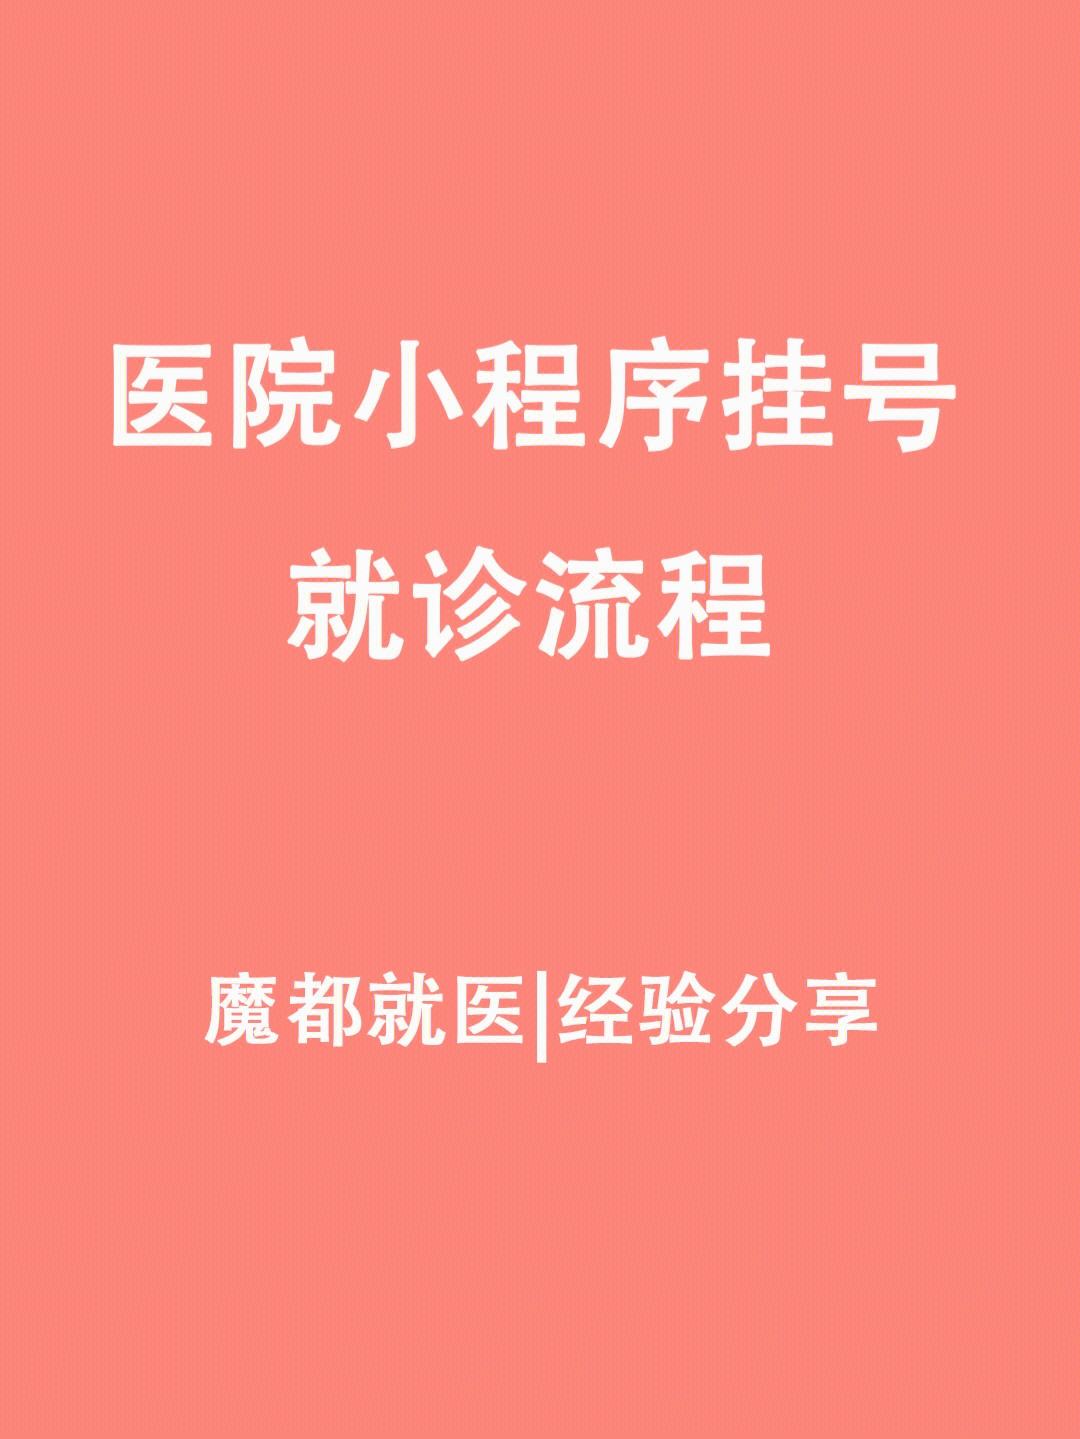 包含上海市中医医院医院黄牛挂号，京医指导就医分享的词条